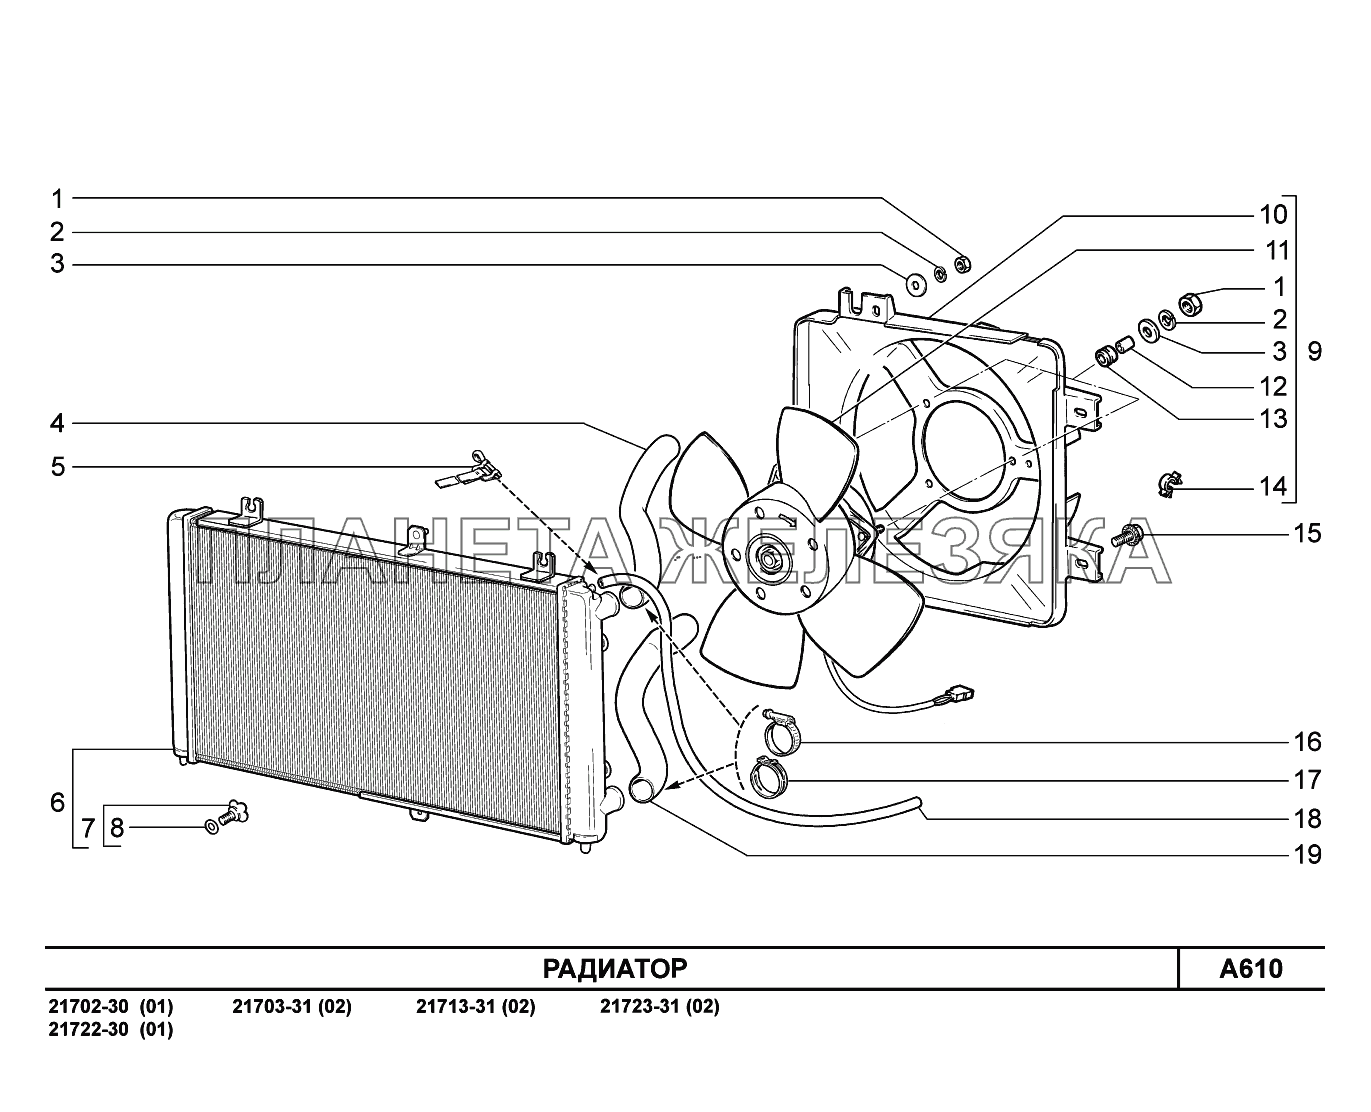 A610. Радиатор ВАЗ-2170 